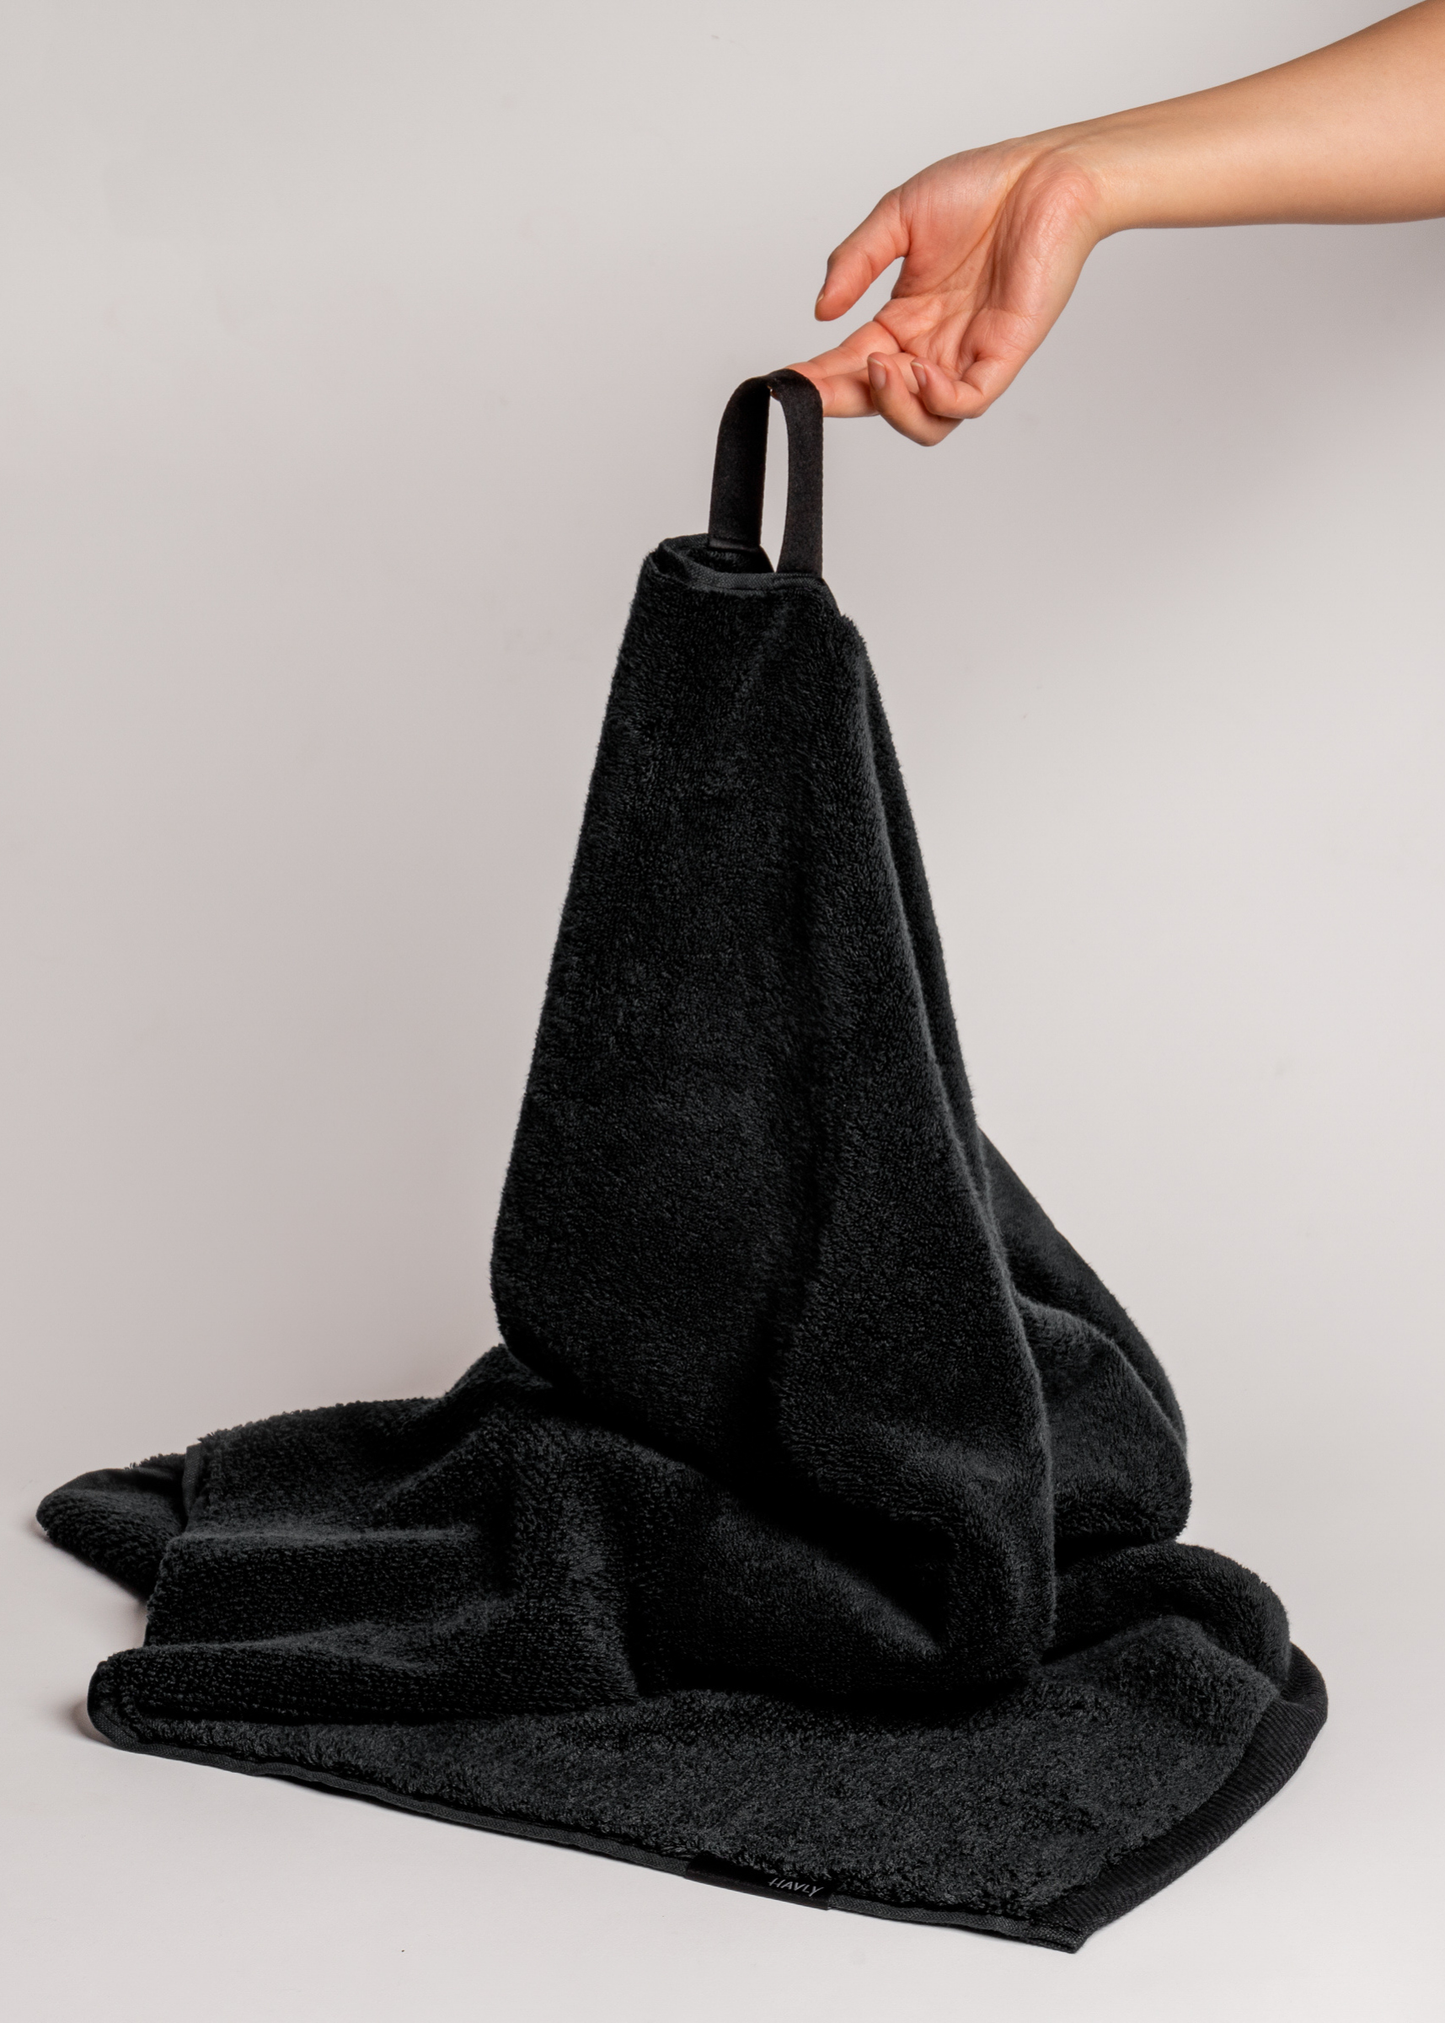 hand holding black bath towel by loop